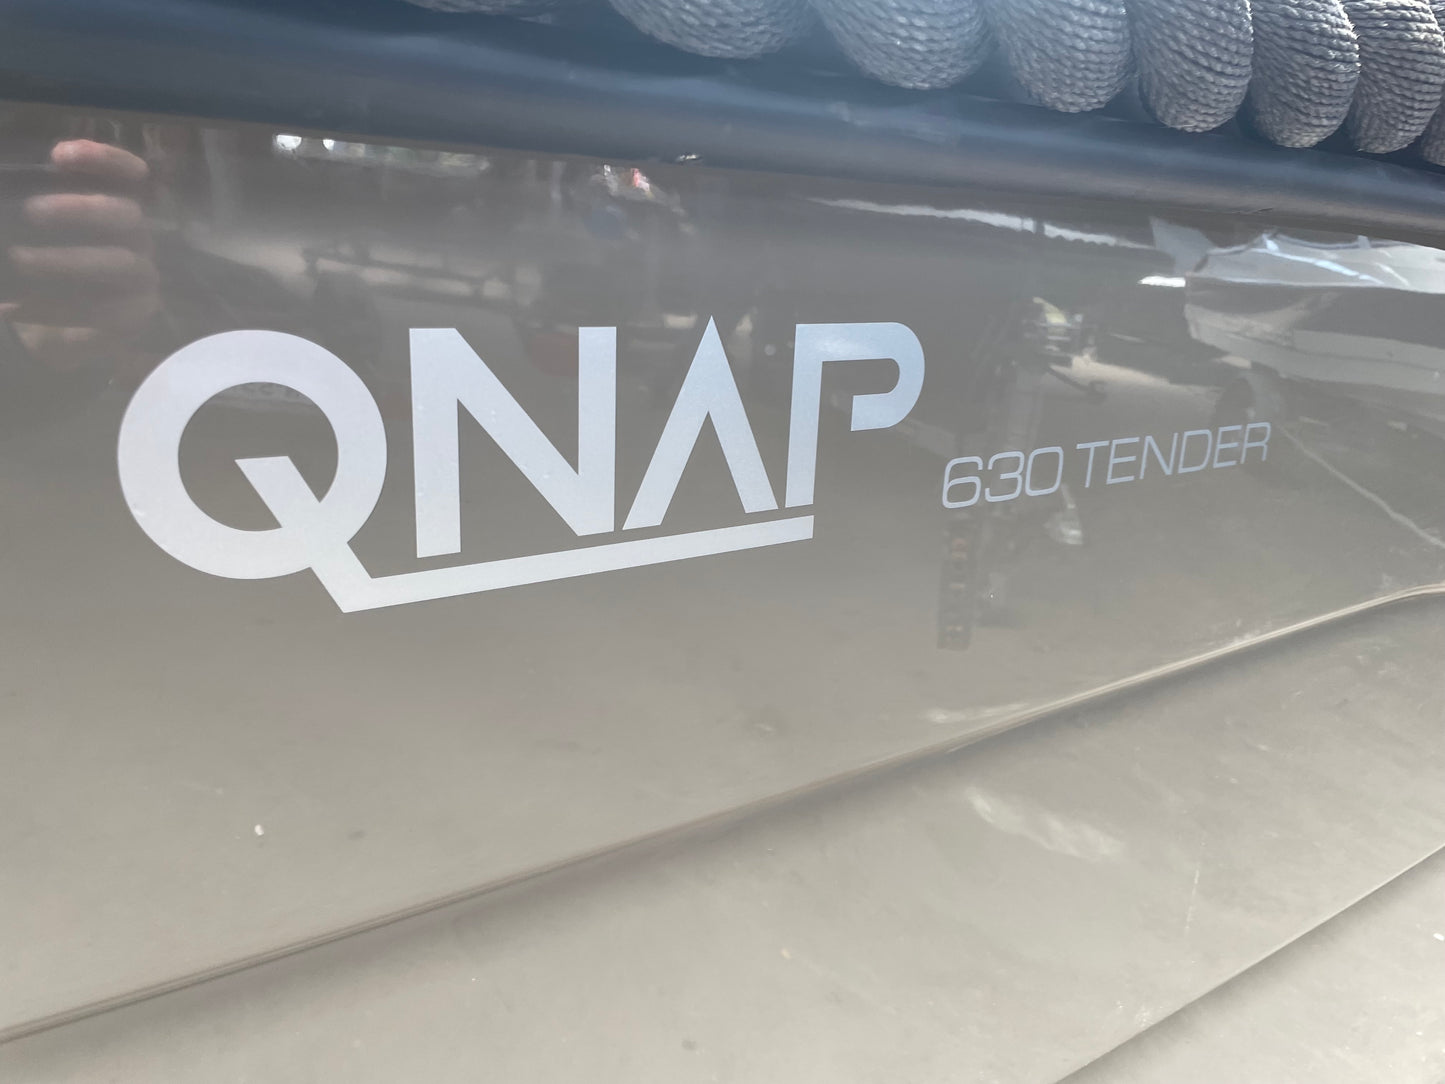 QNAP 630 Tender